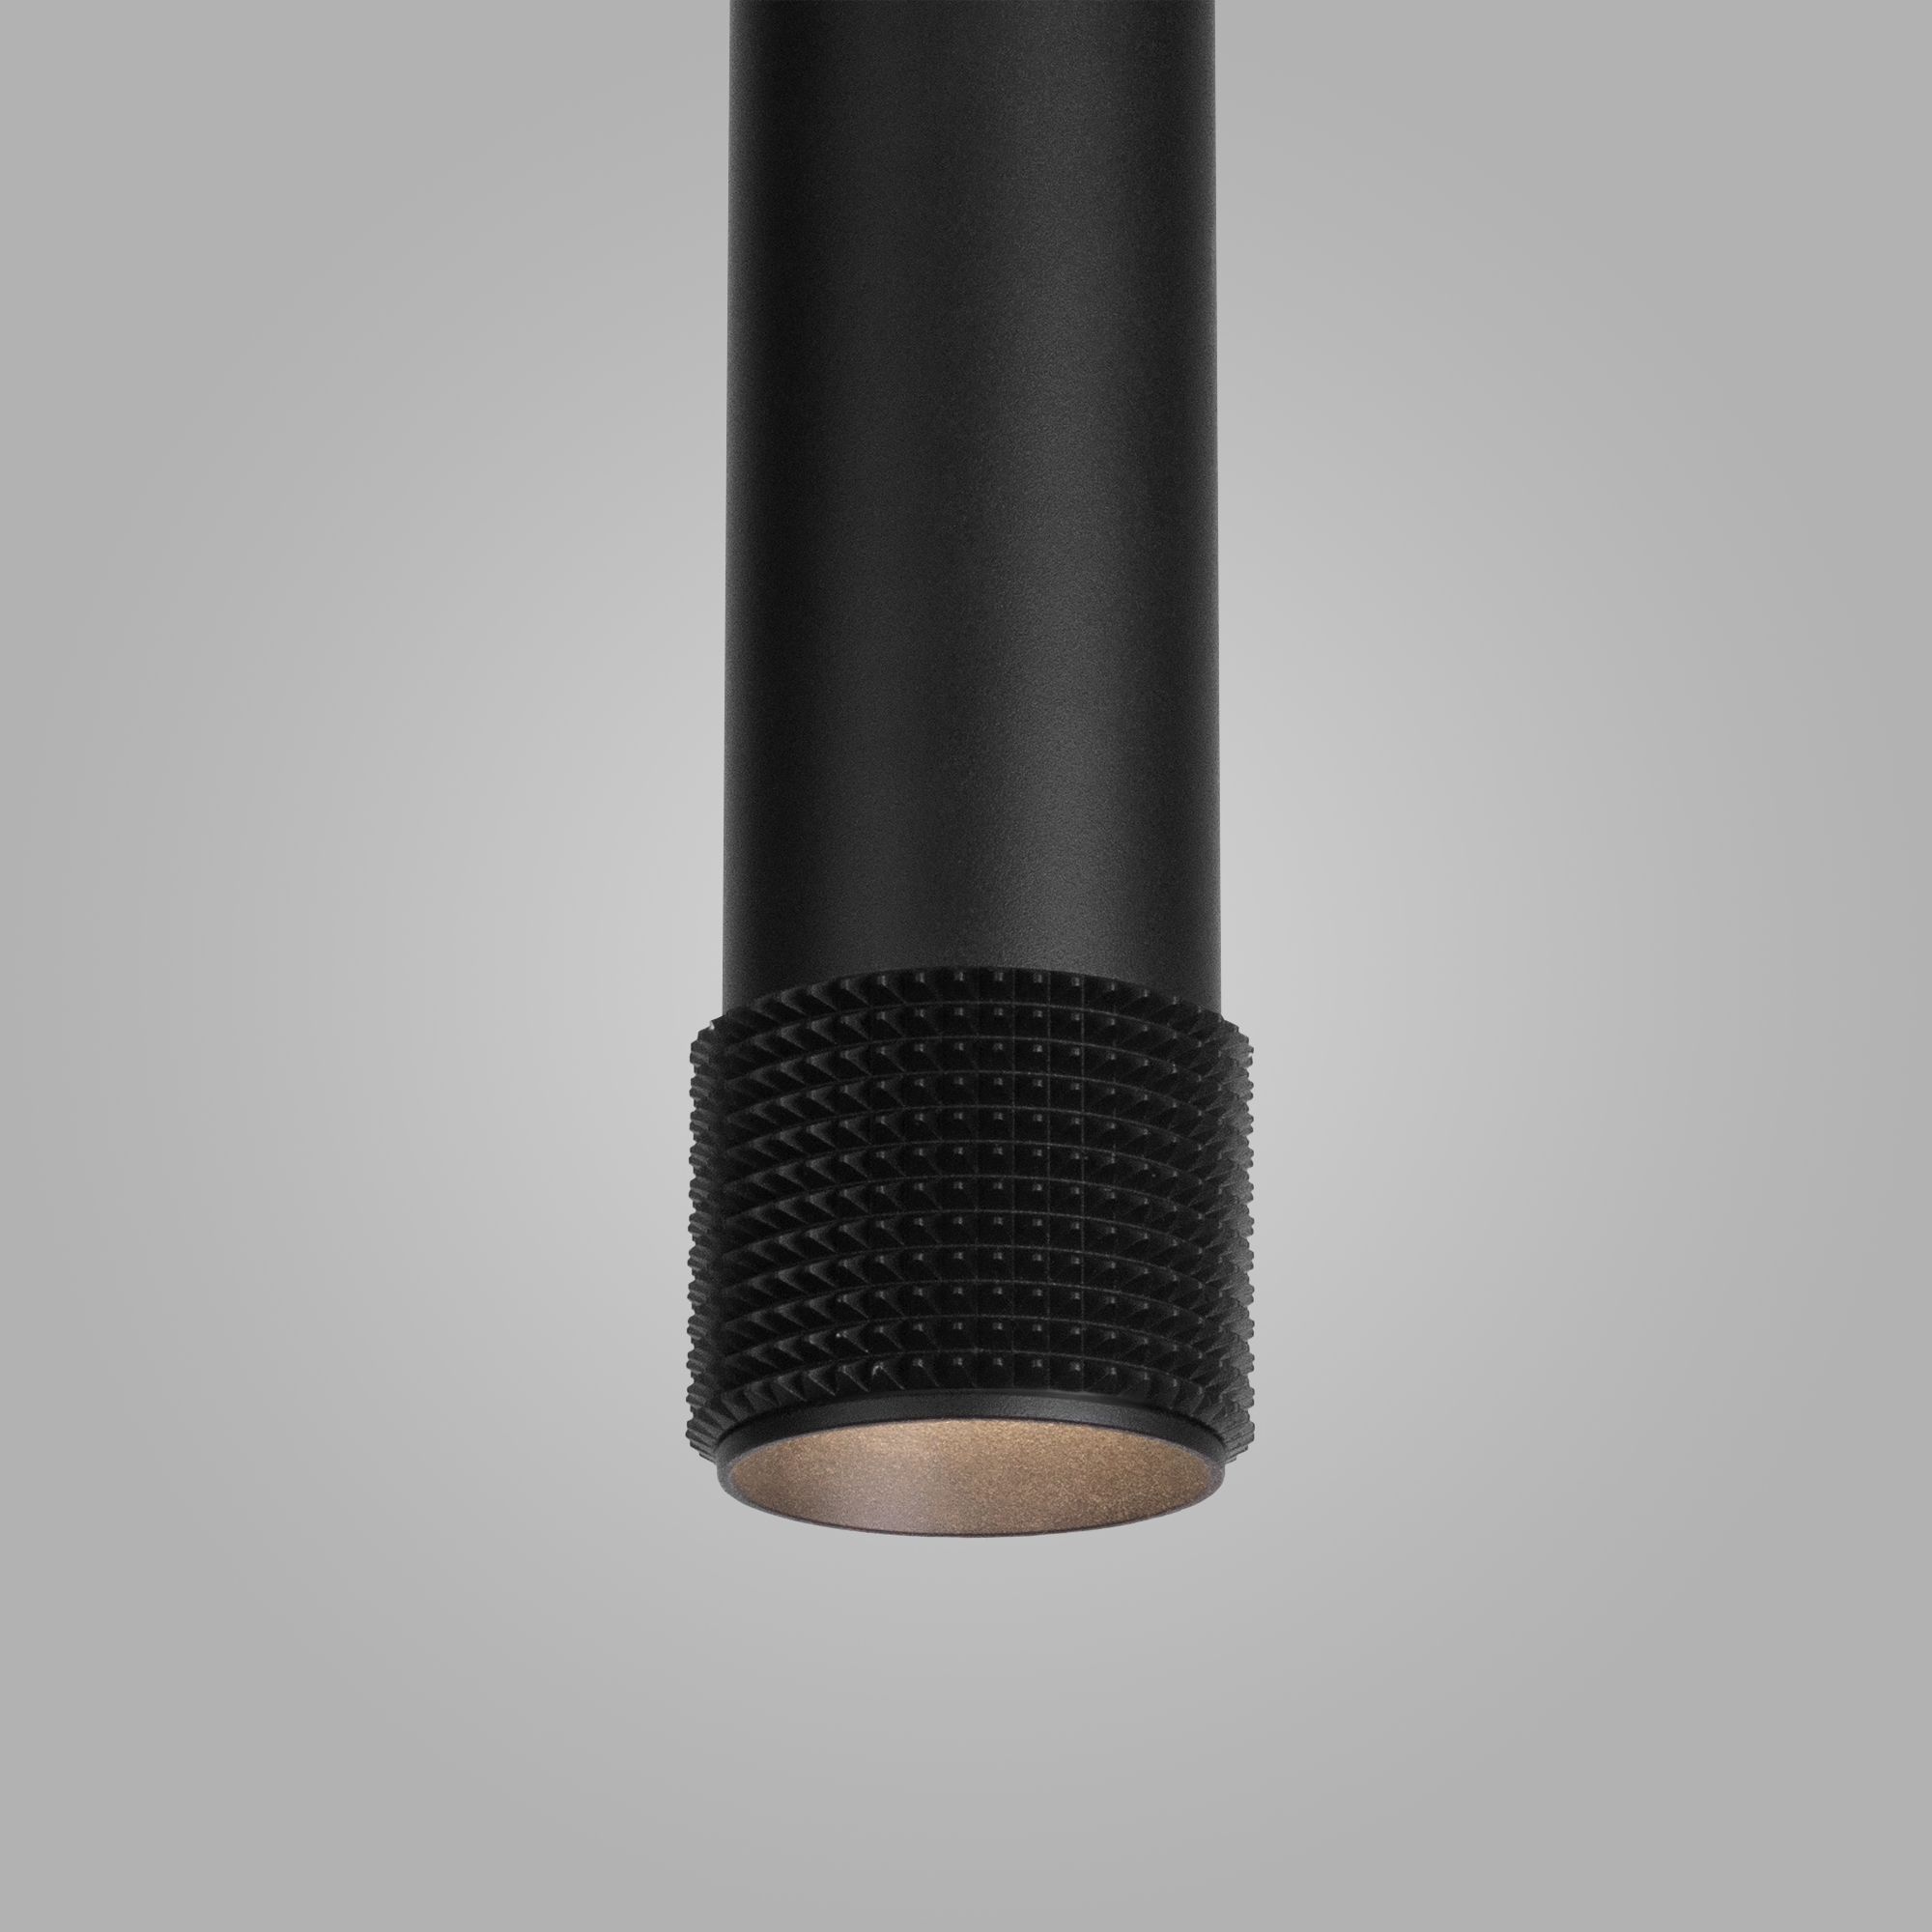 Подвесной светильник Elektrostandard Spike DLN113 GU10 черный. Фото 4